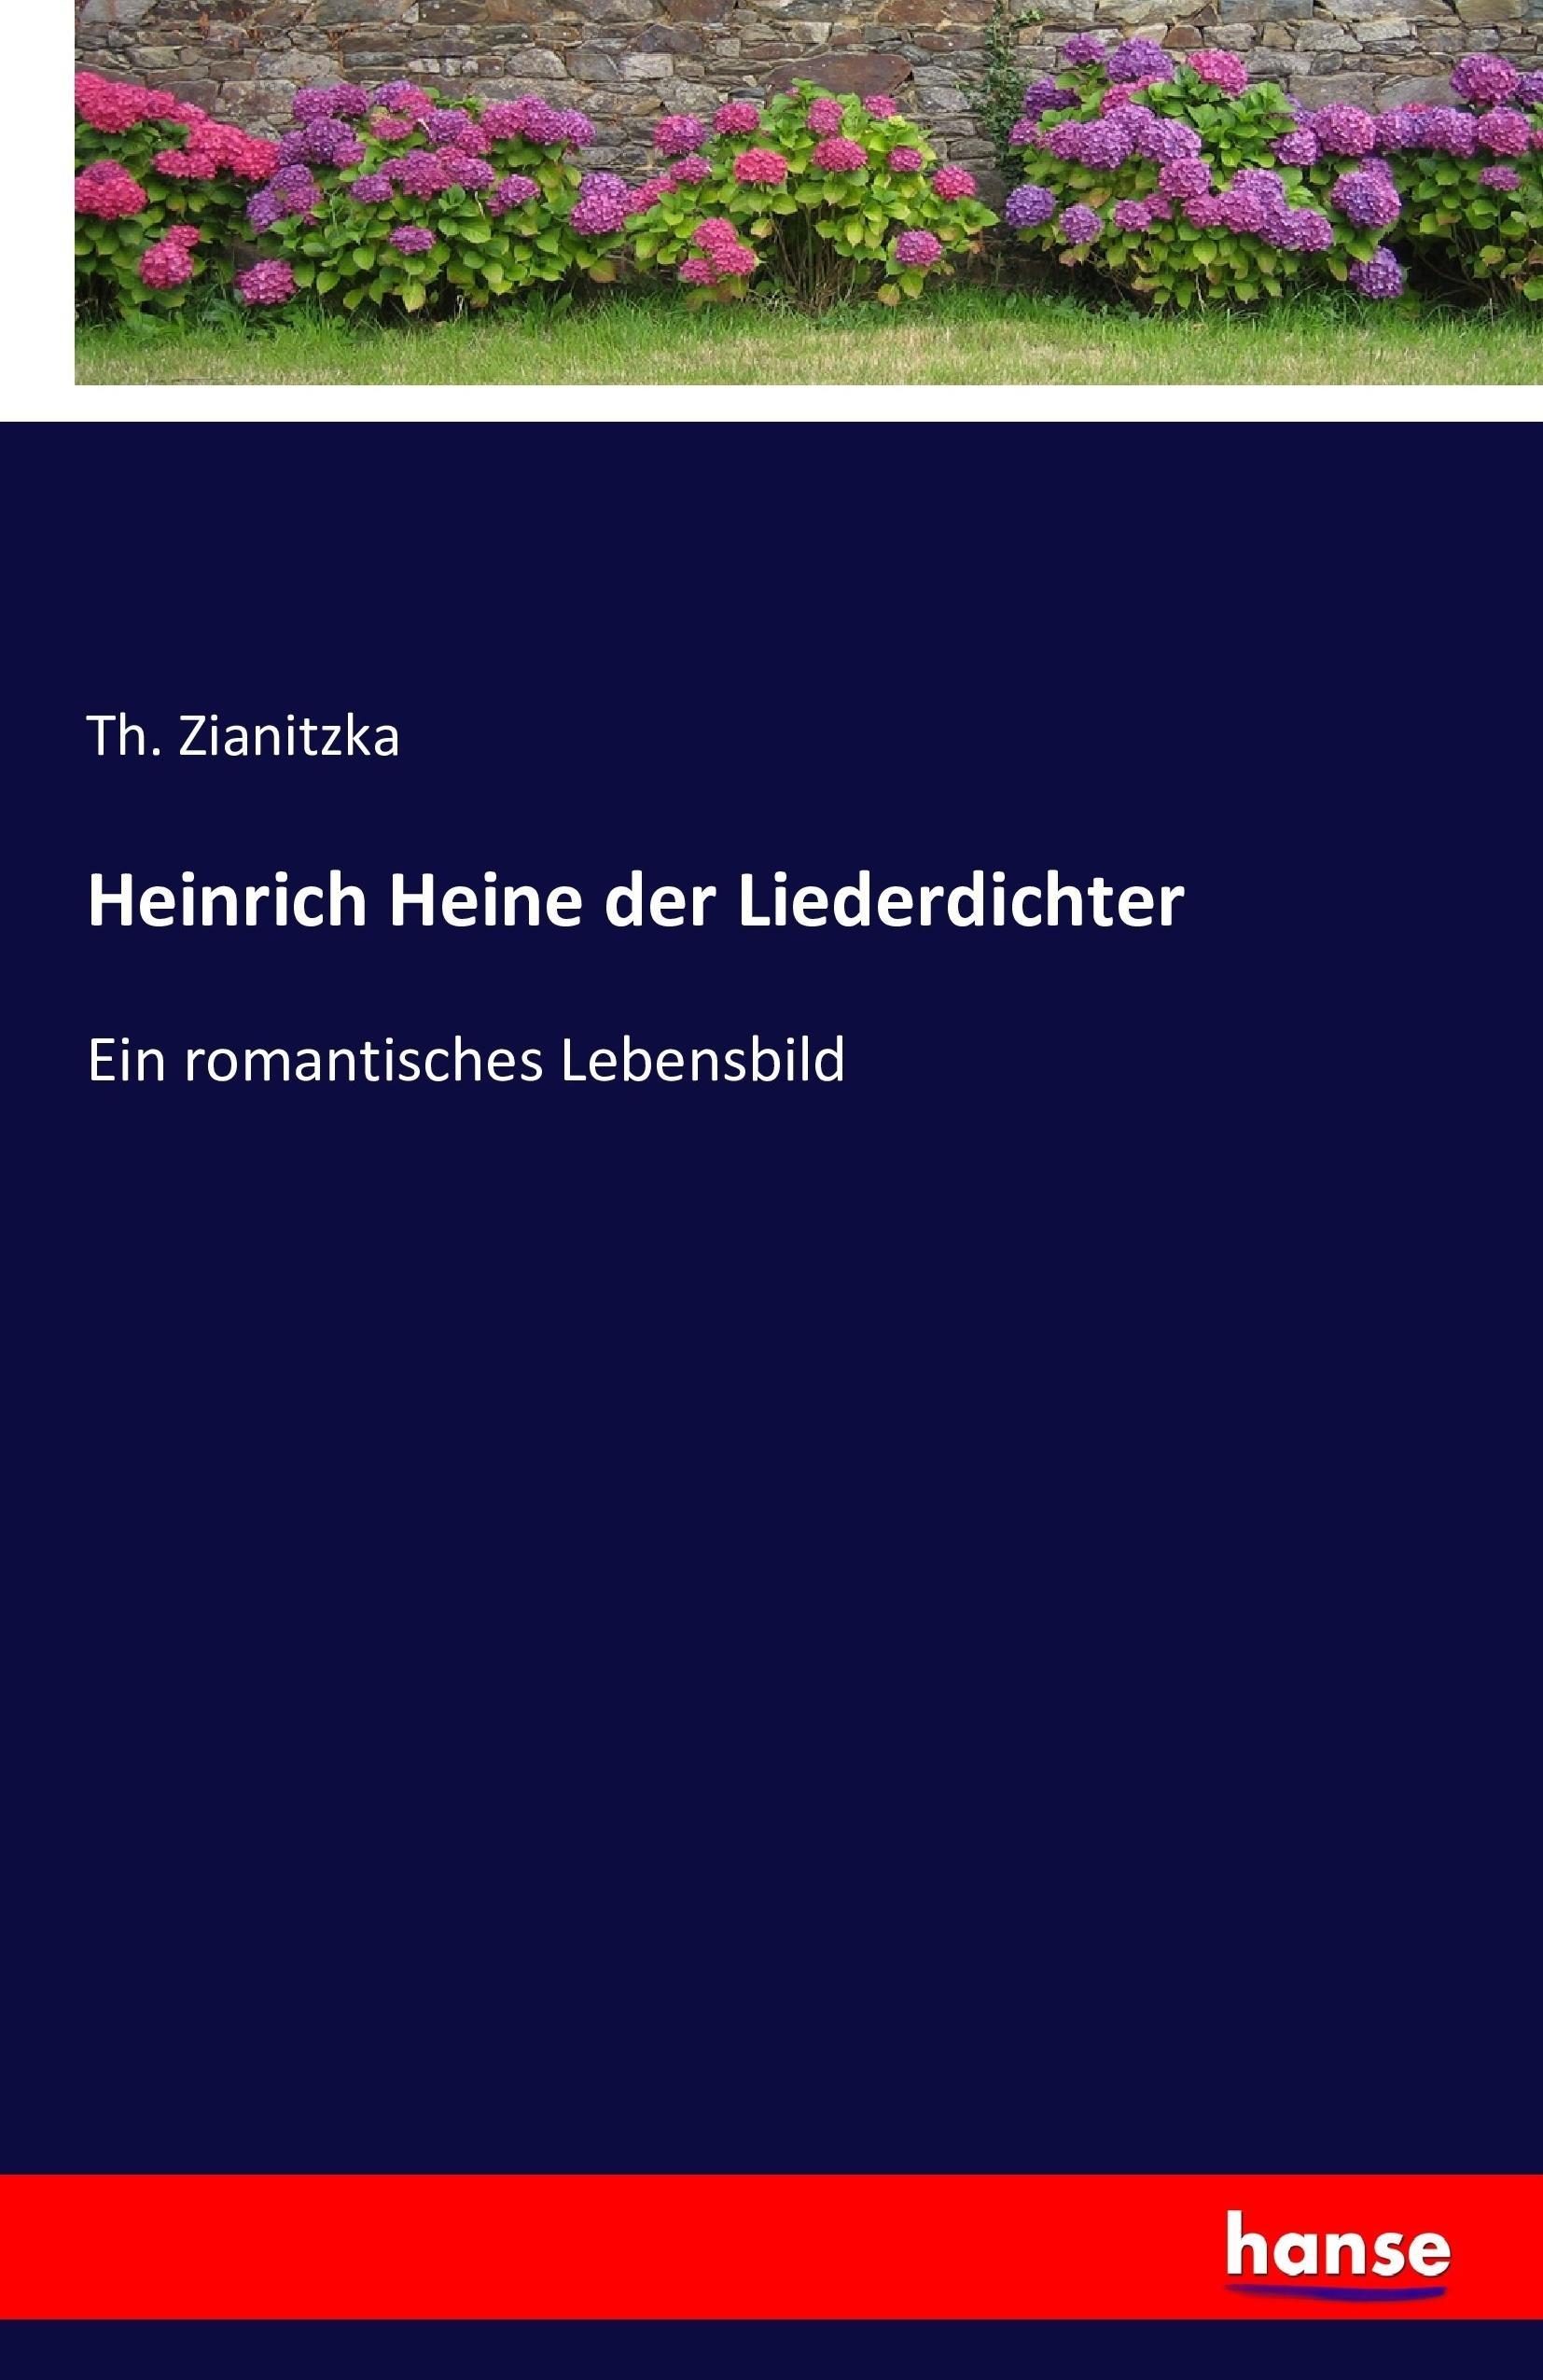 Heinrich Heine der Liederdichter / Ein romantisches Lebensbild / Th. Zianitzka / Taschenbuch / Paperback / 432 S. / Deutsch / 2016 / hansebooks / EAN 9783742863683 - Zianitzka, Th.